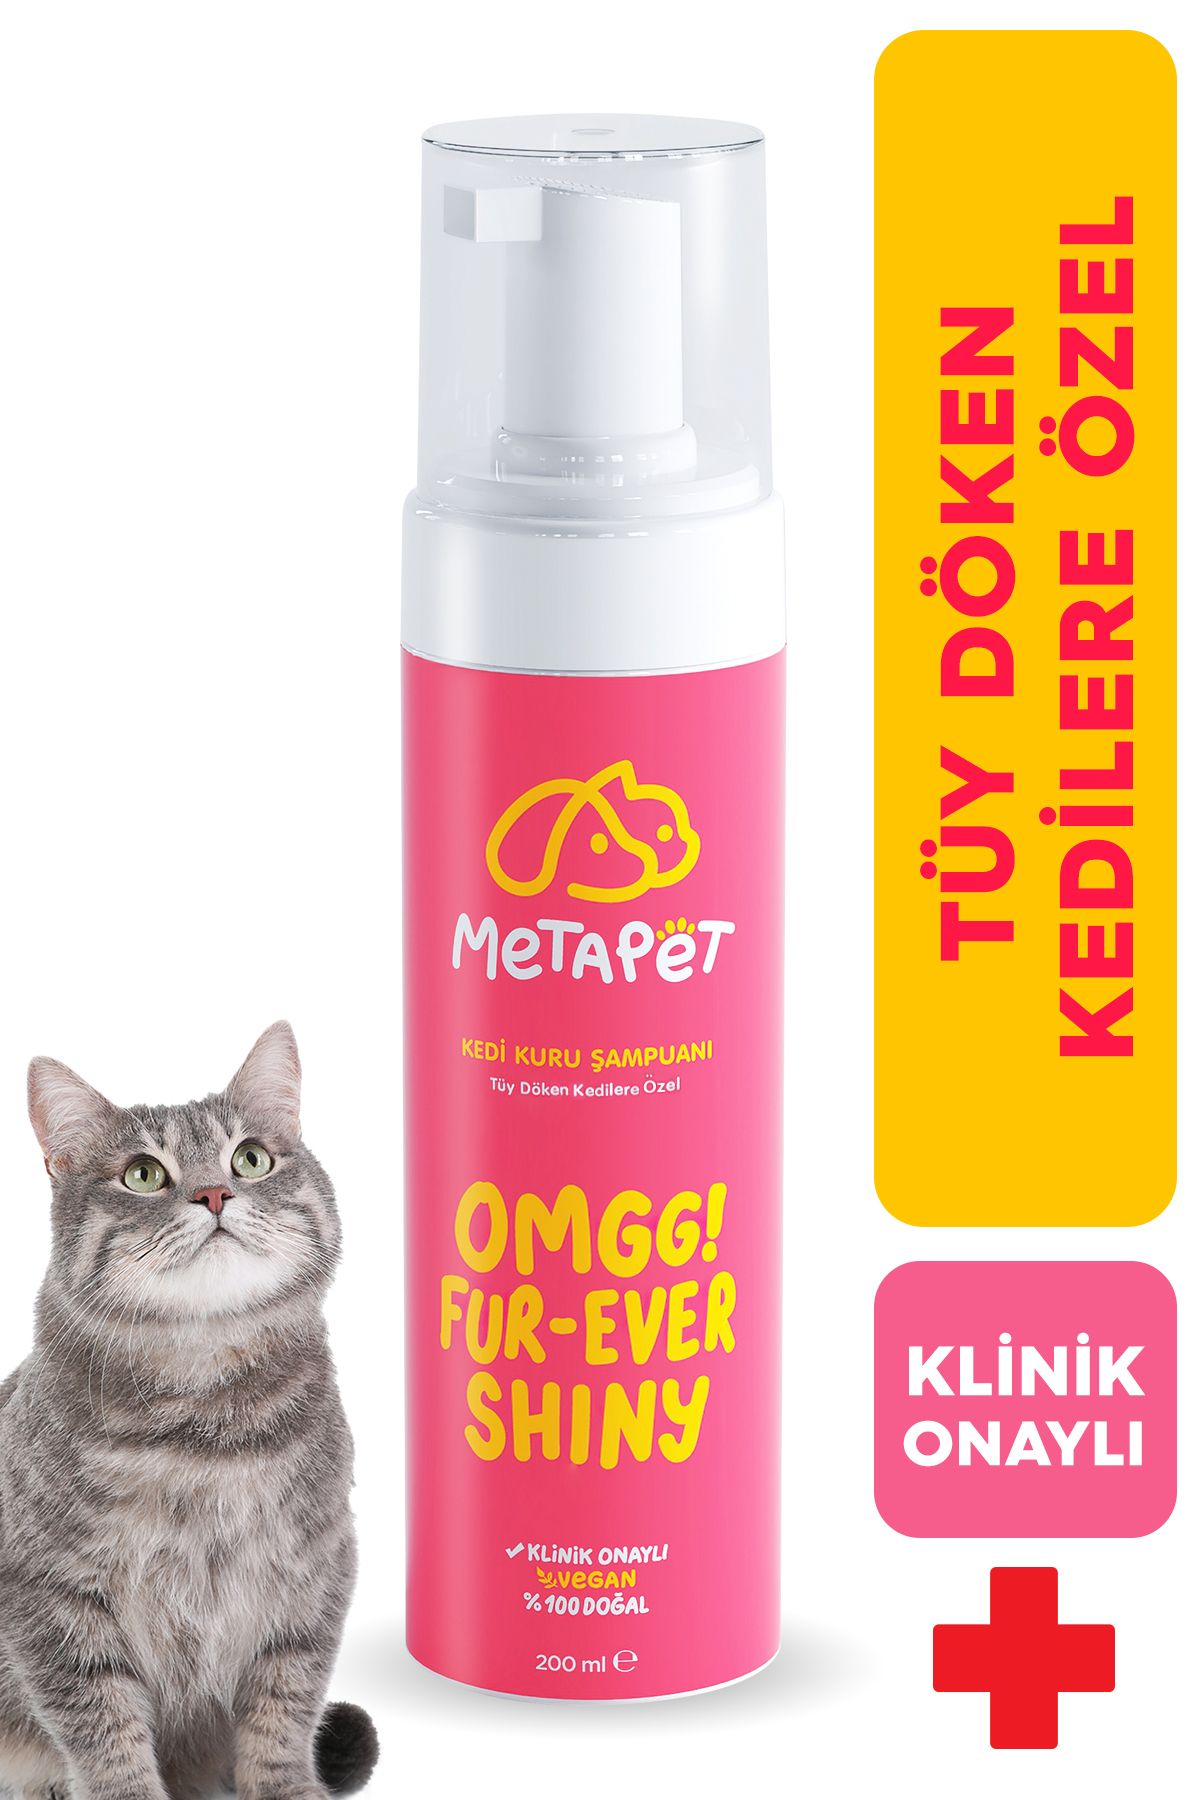 Metapet Tüy Döken Kedilere Özel Kuru Bakım Şampuanı, E Vitamini Ve Doğal Yağlar, Kedi Yıkama Köpüğü